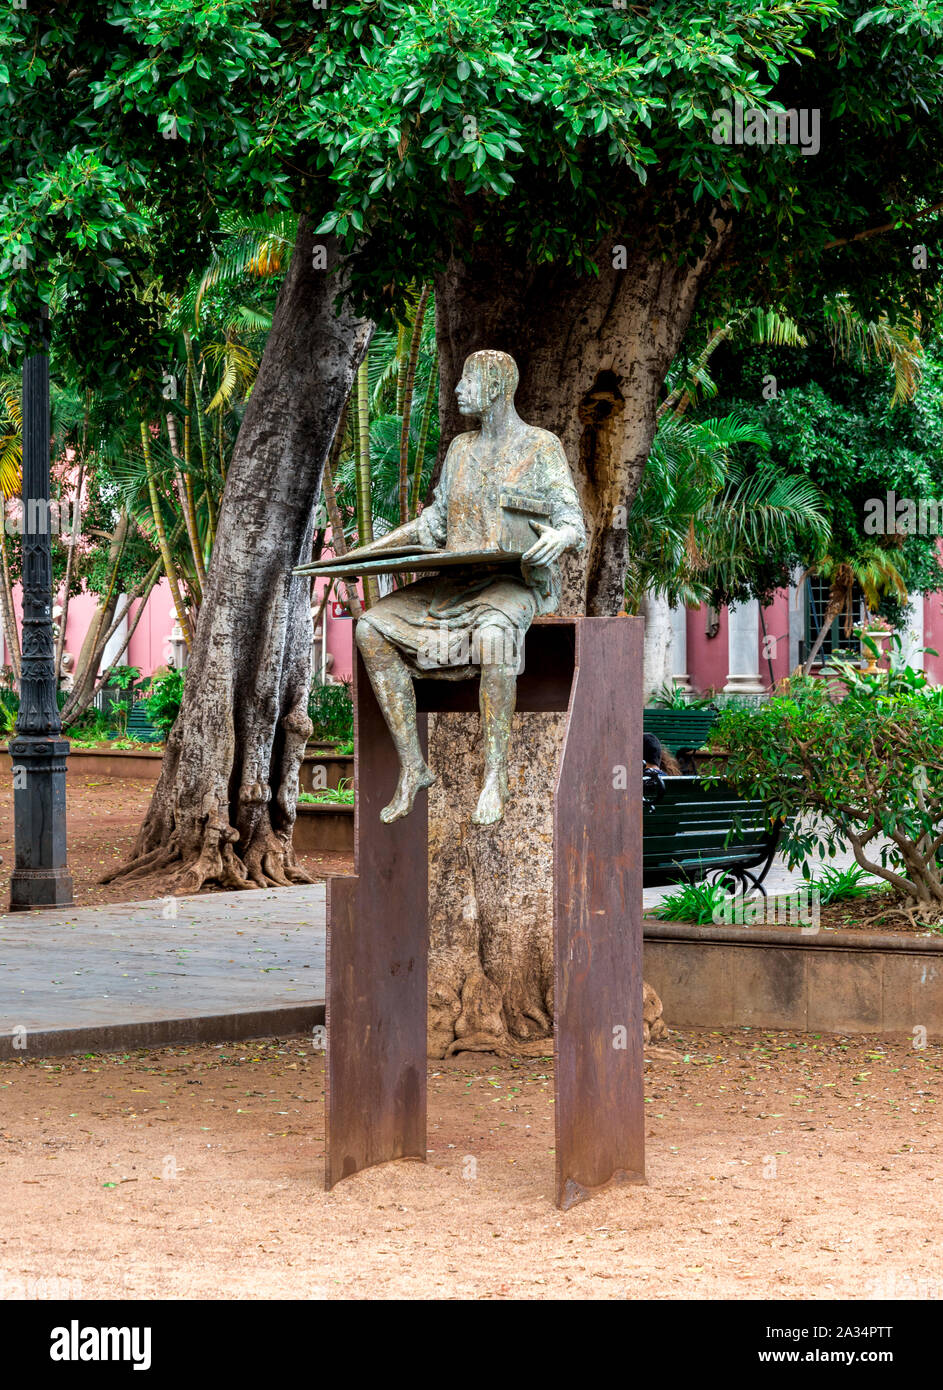 Eine Statue des sitzenden Menschen als ein Teil der "Mut" der Figurengruppe am Prince's Square in Santa Cruz de Tenerife, Kanarische Inseln, Spanien Stockfoto